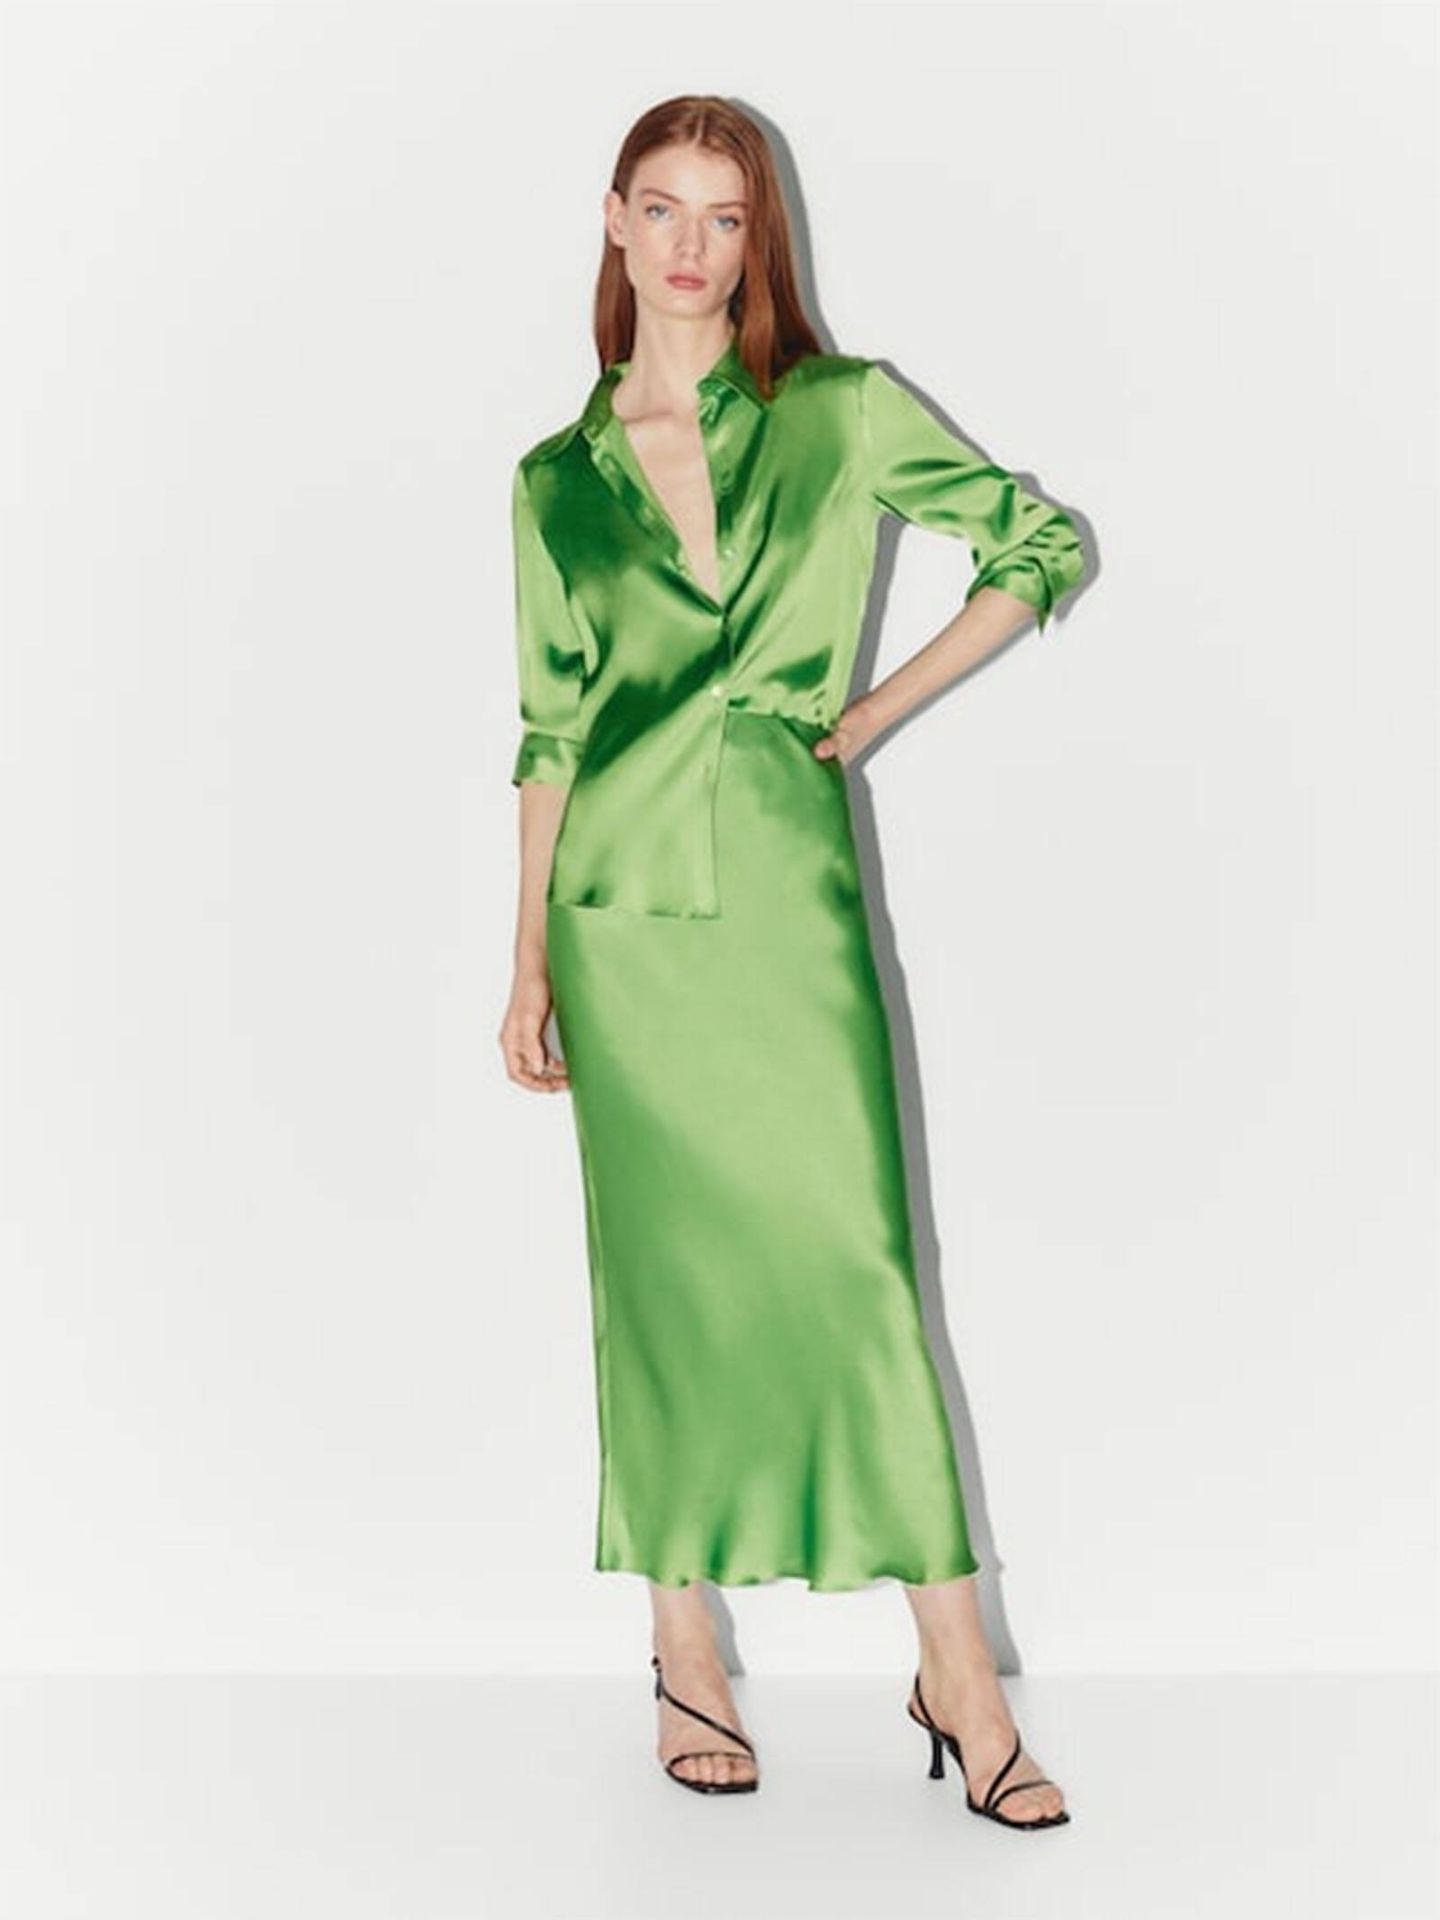 Conjunto de camisa y falda satinadas de color verde. (Massimo Dutti/Cortesía)